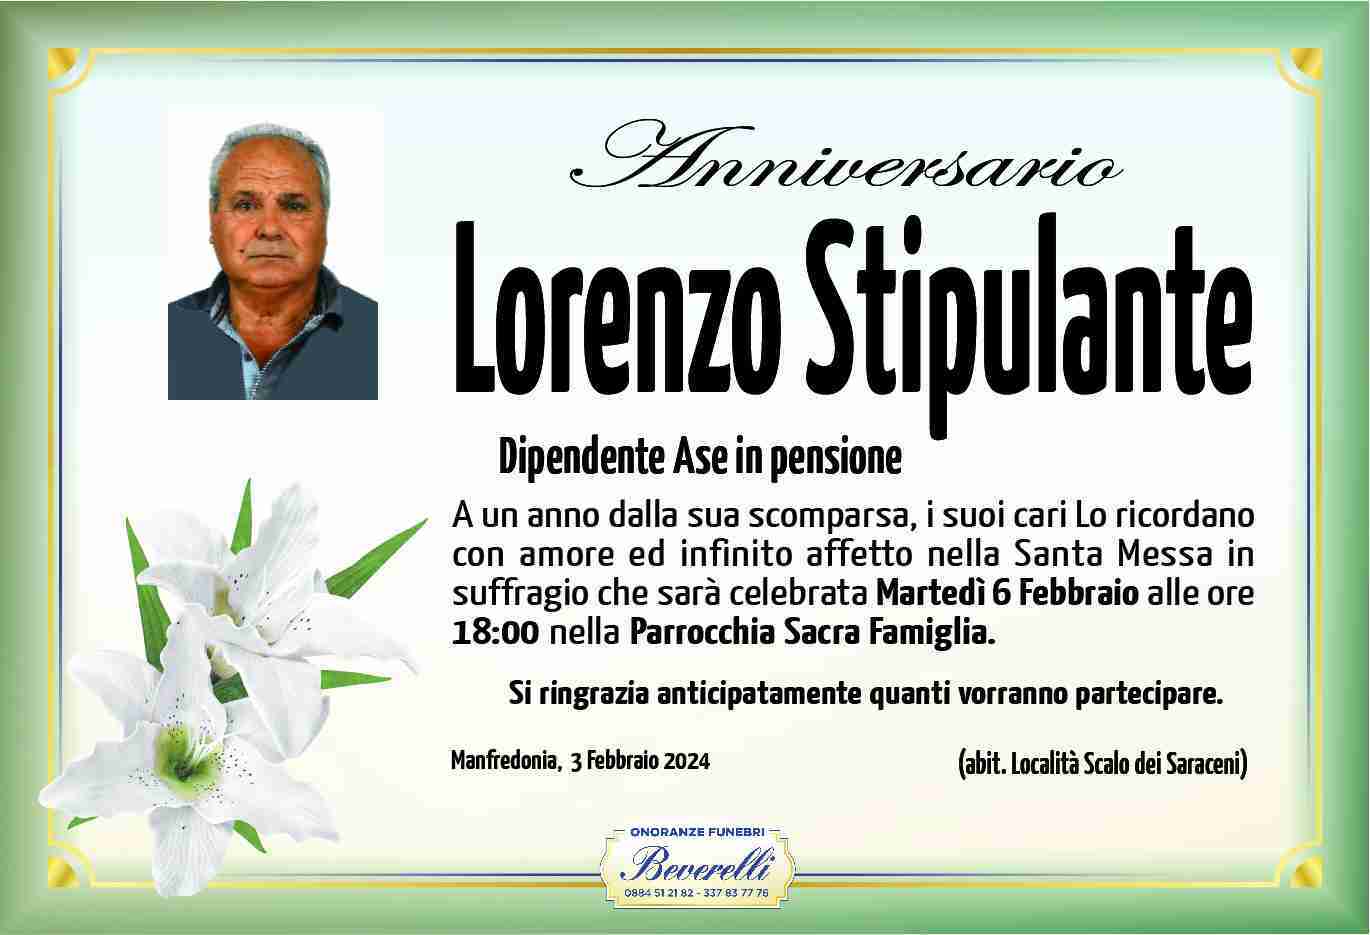 Lorenzo Stipulante